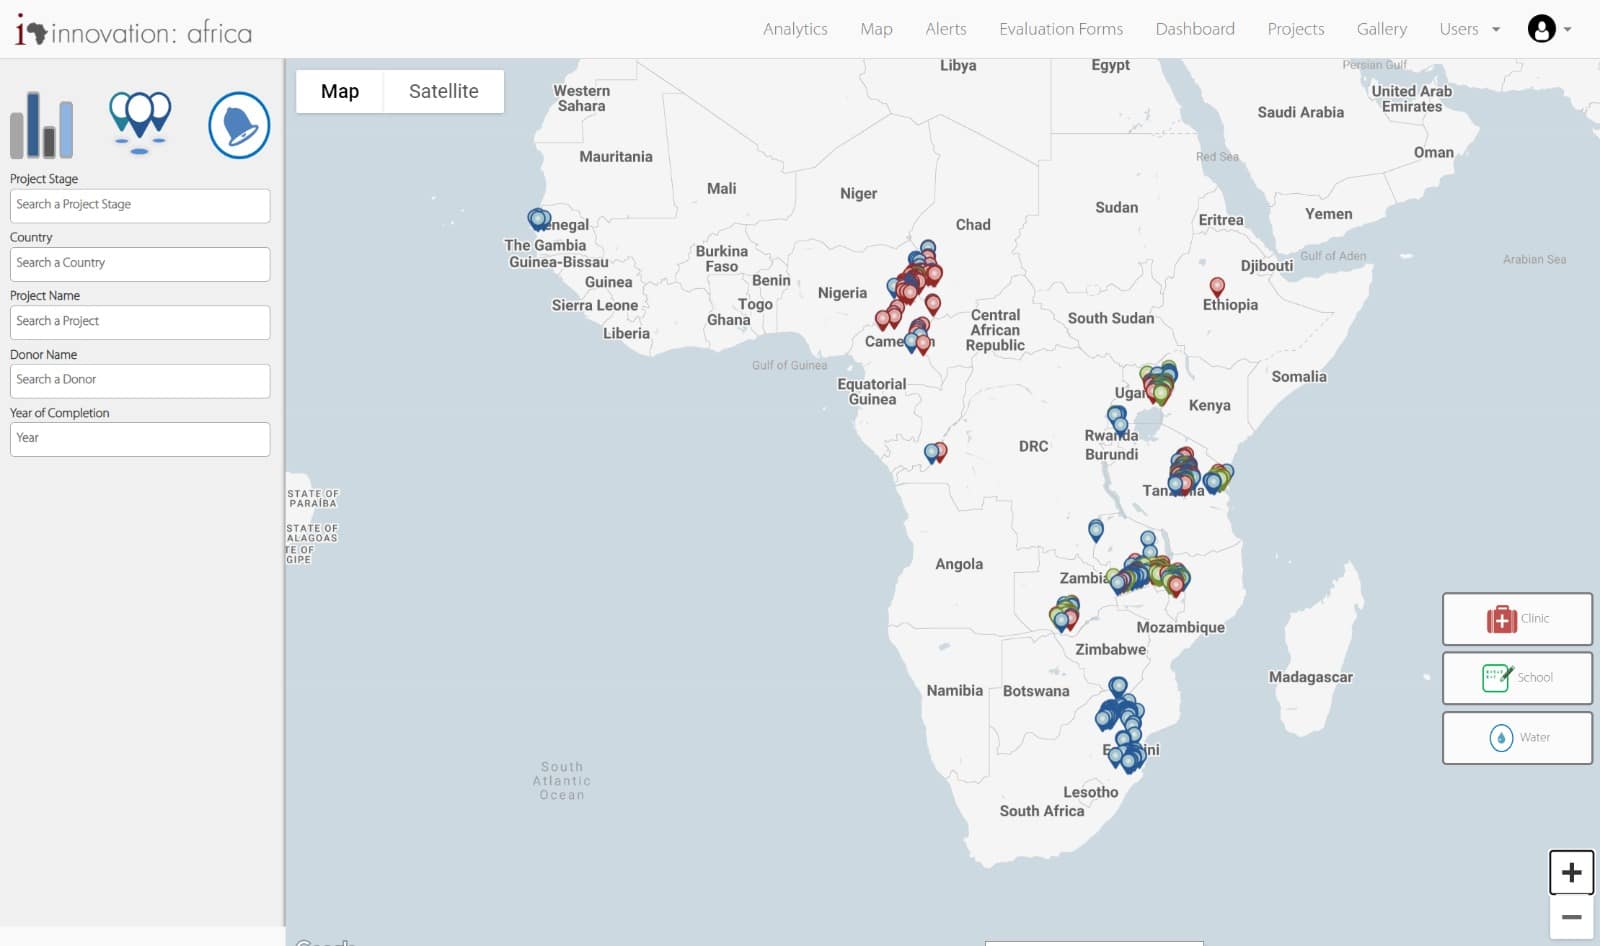 מפת הפרויקטים של חדשנות: אפריקה (לחצו להגדלה)